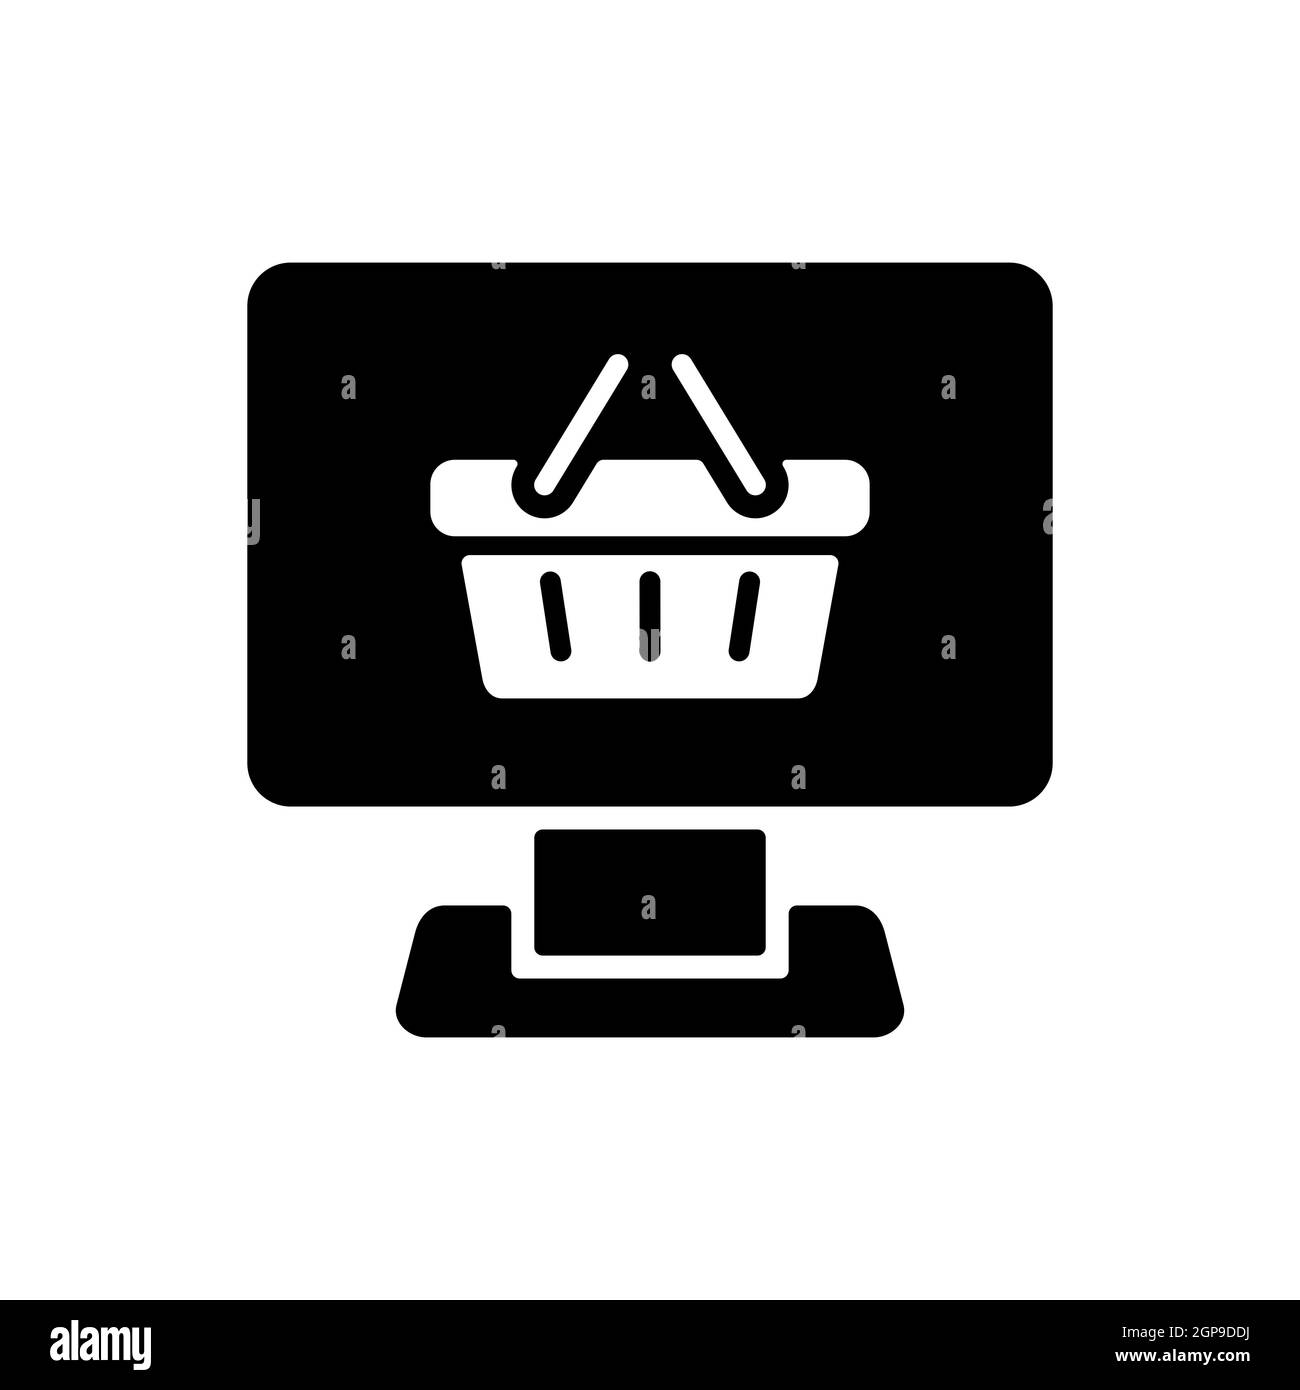 Símbolo de aplicación de tienda en línea. Icono plano lineal con texto  Online Shop con carrito de la compra en teléfono inteligente en color negro  Stock Vector